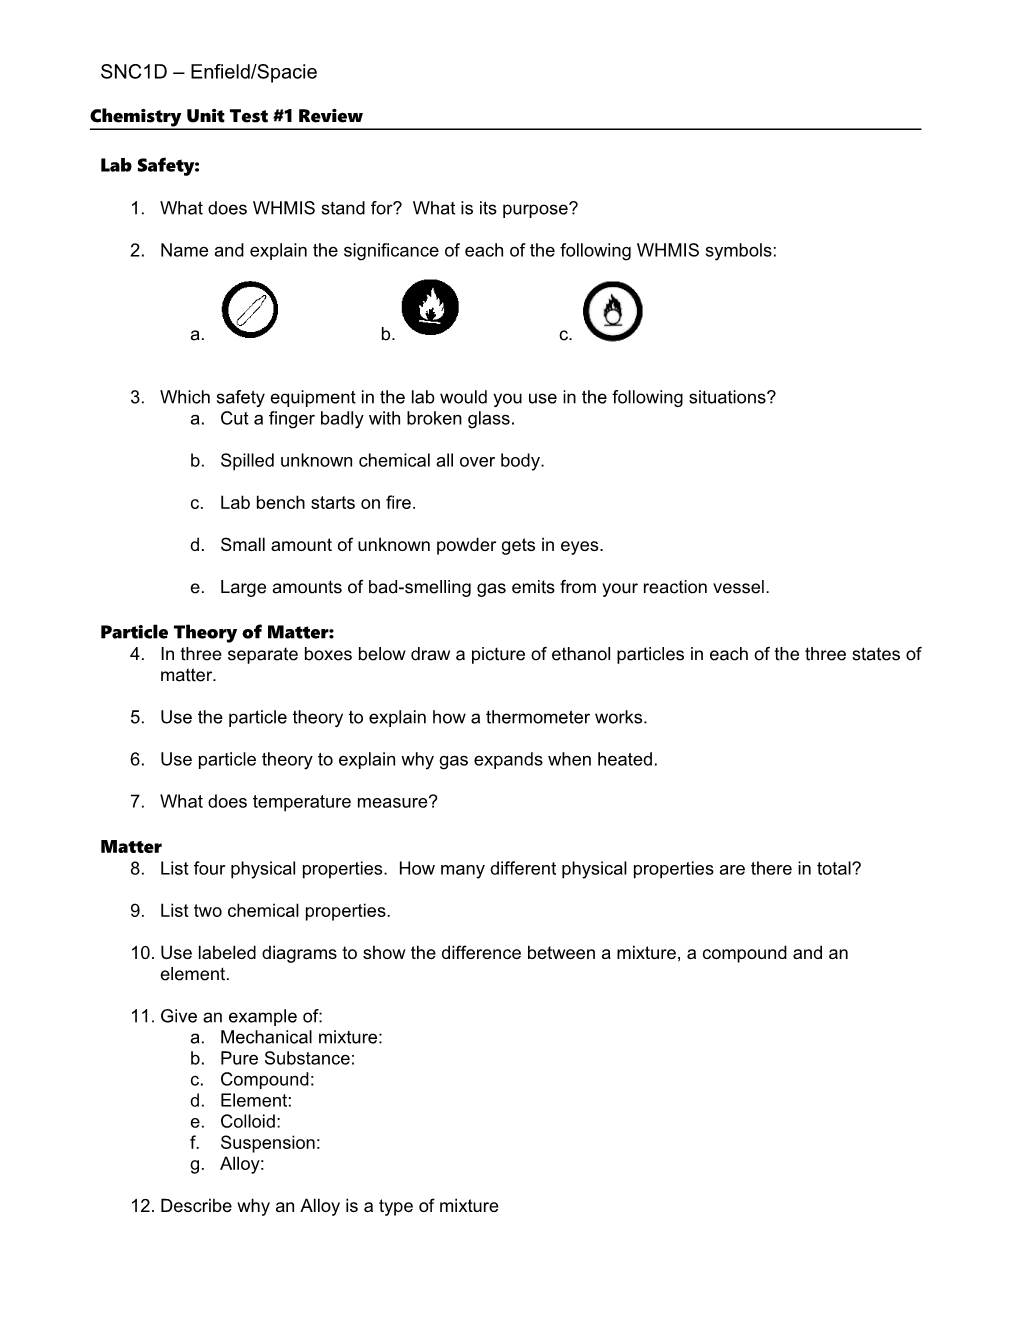 Unit Test Review Sheet